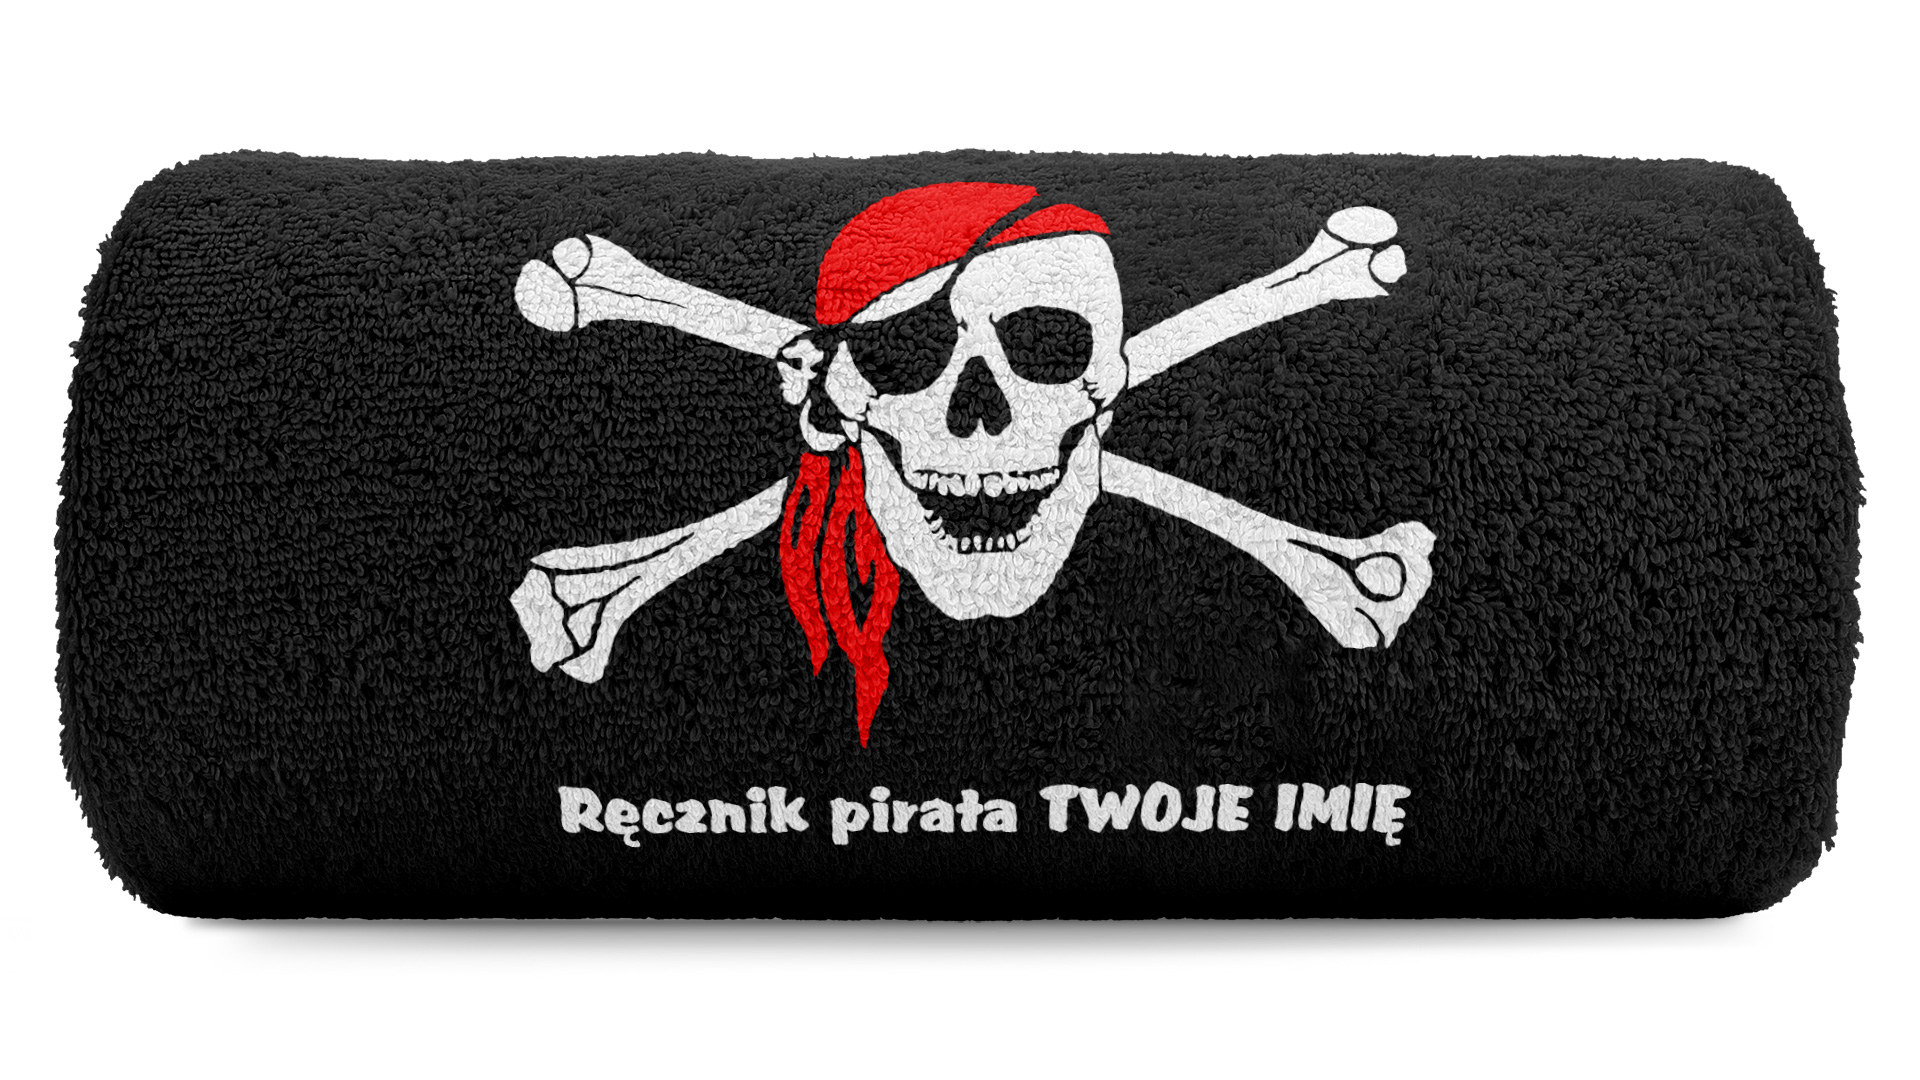 pat15.net Ręcznik 100x50 z haftem - Ręcznik pirata + Imię Czaszka Czarny 1018